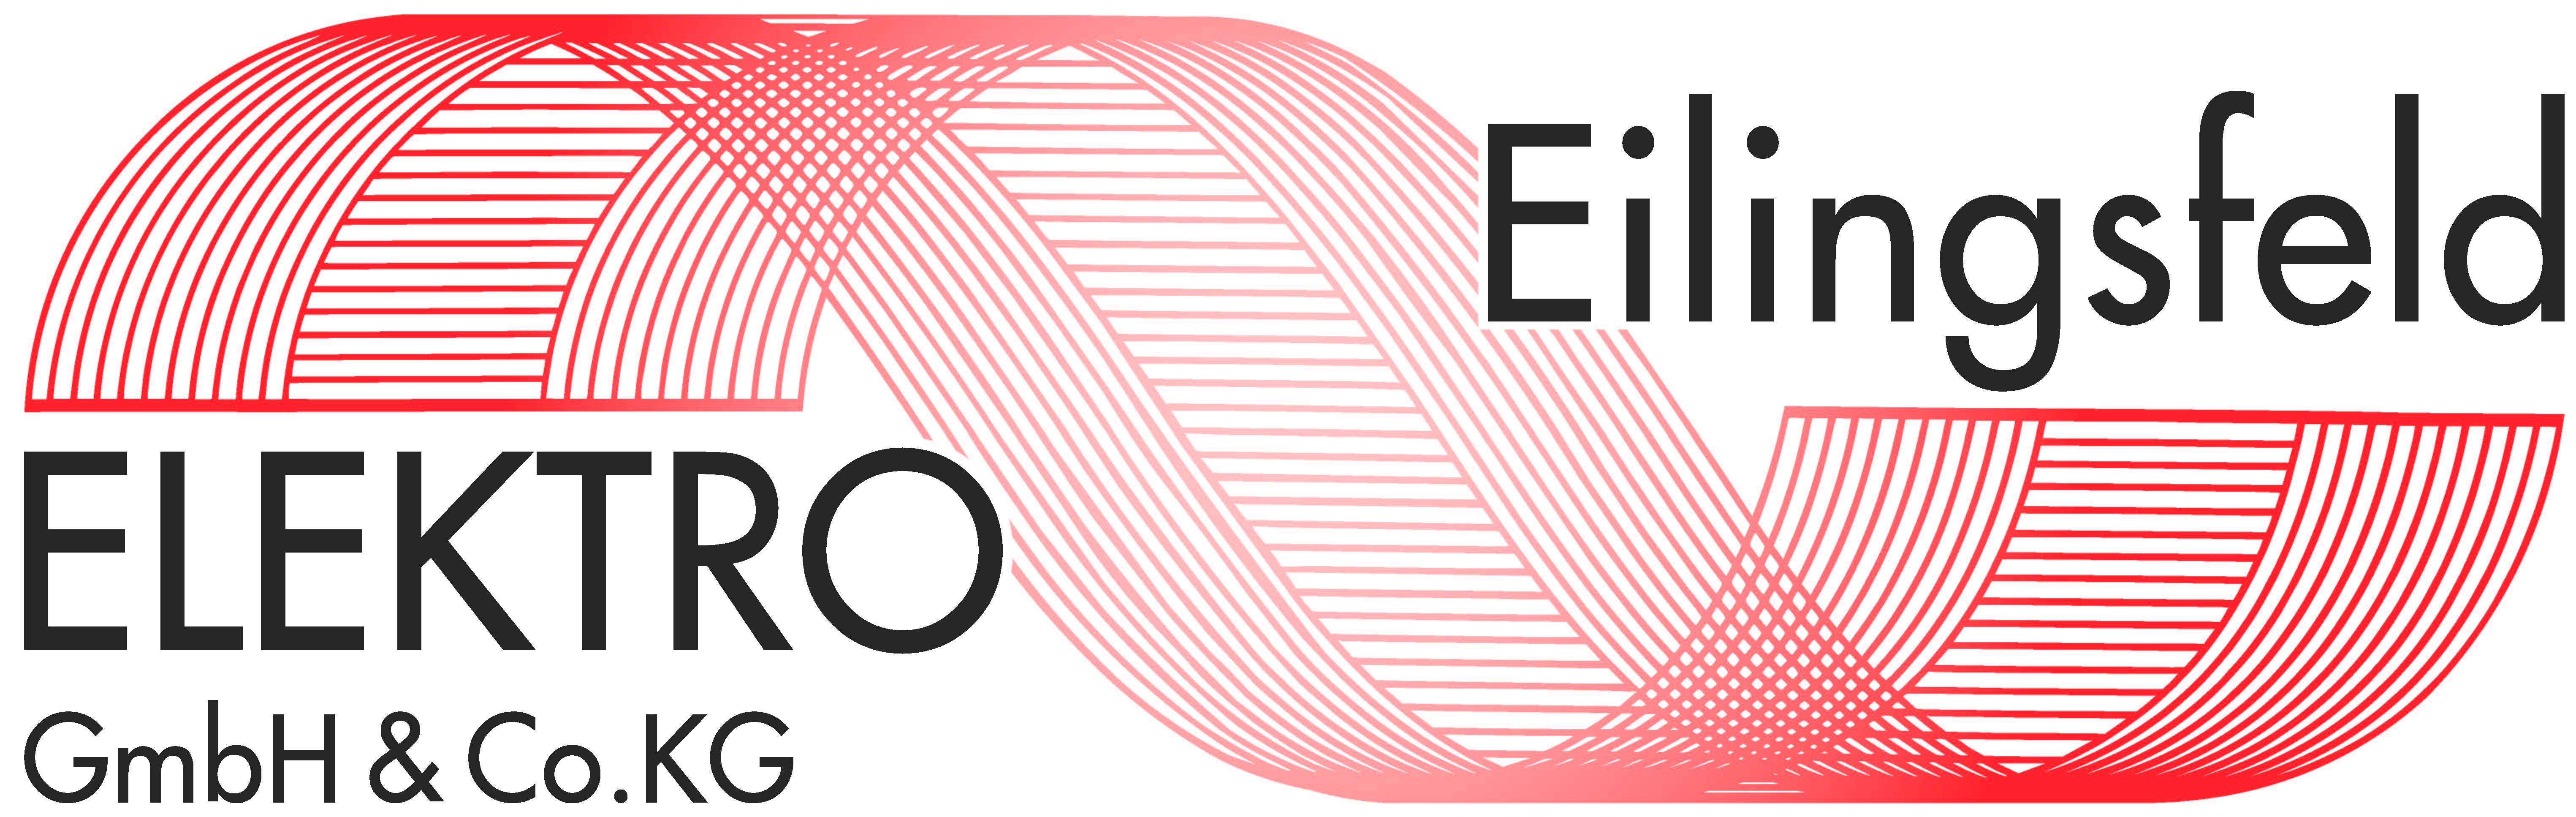 Logo_elektro_eilingsfeld